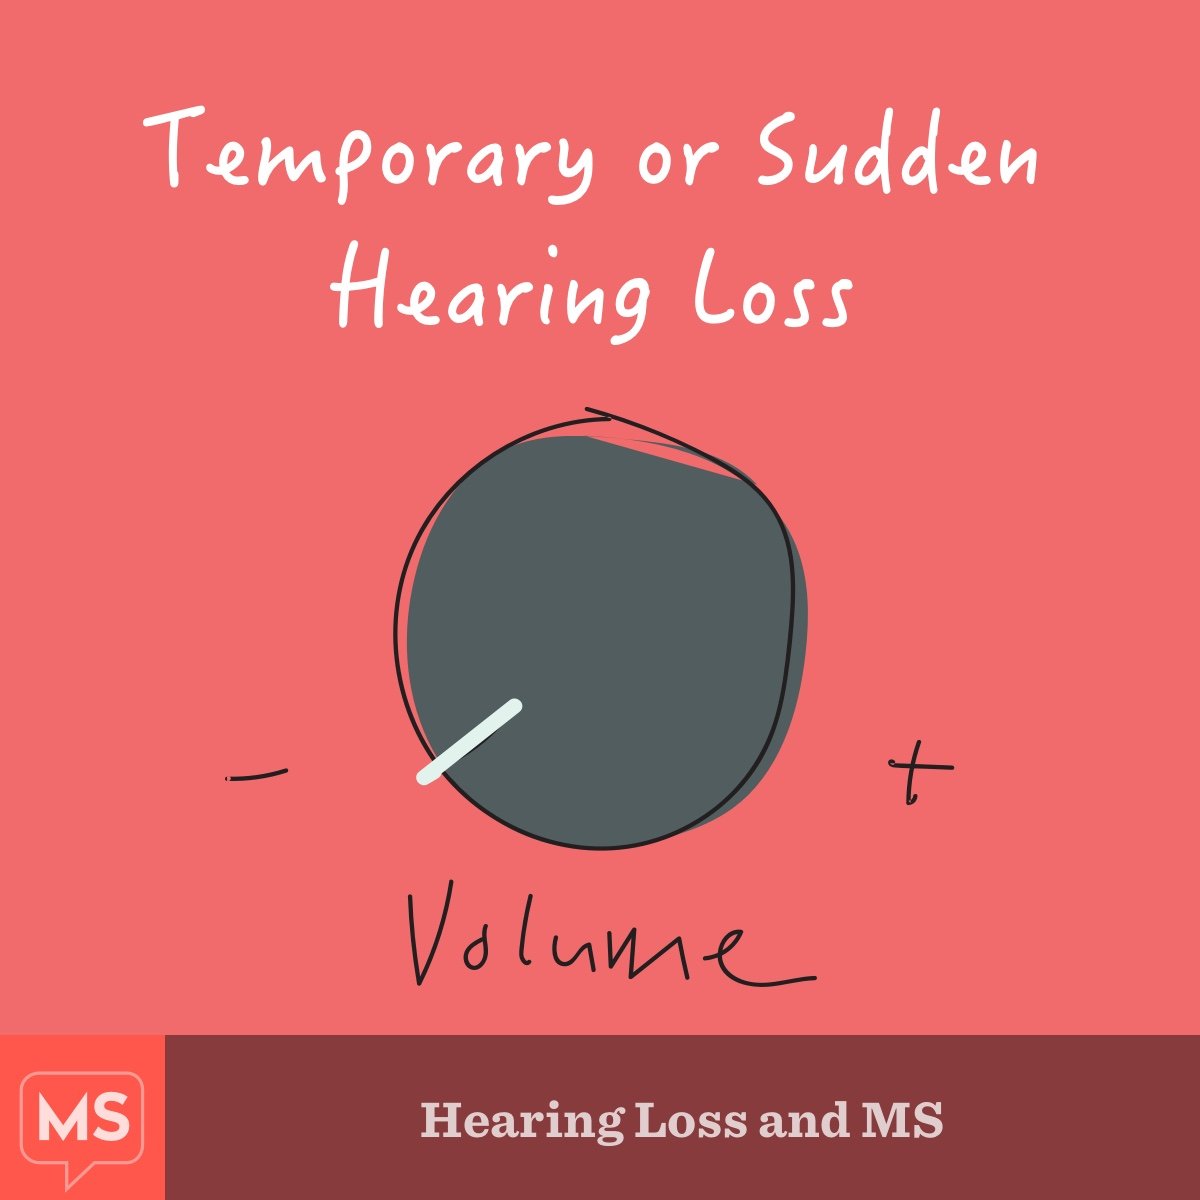 Hearing Loss and MS